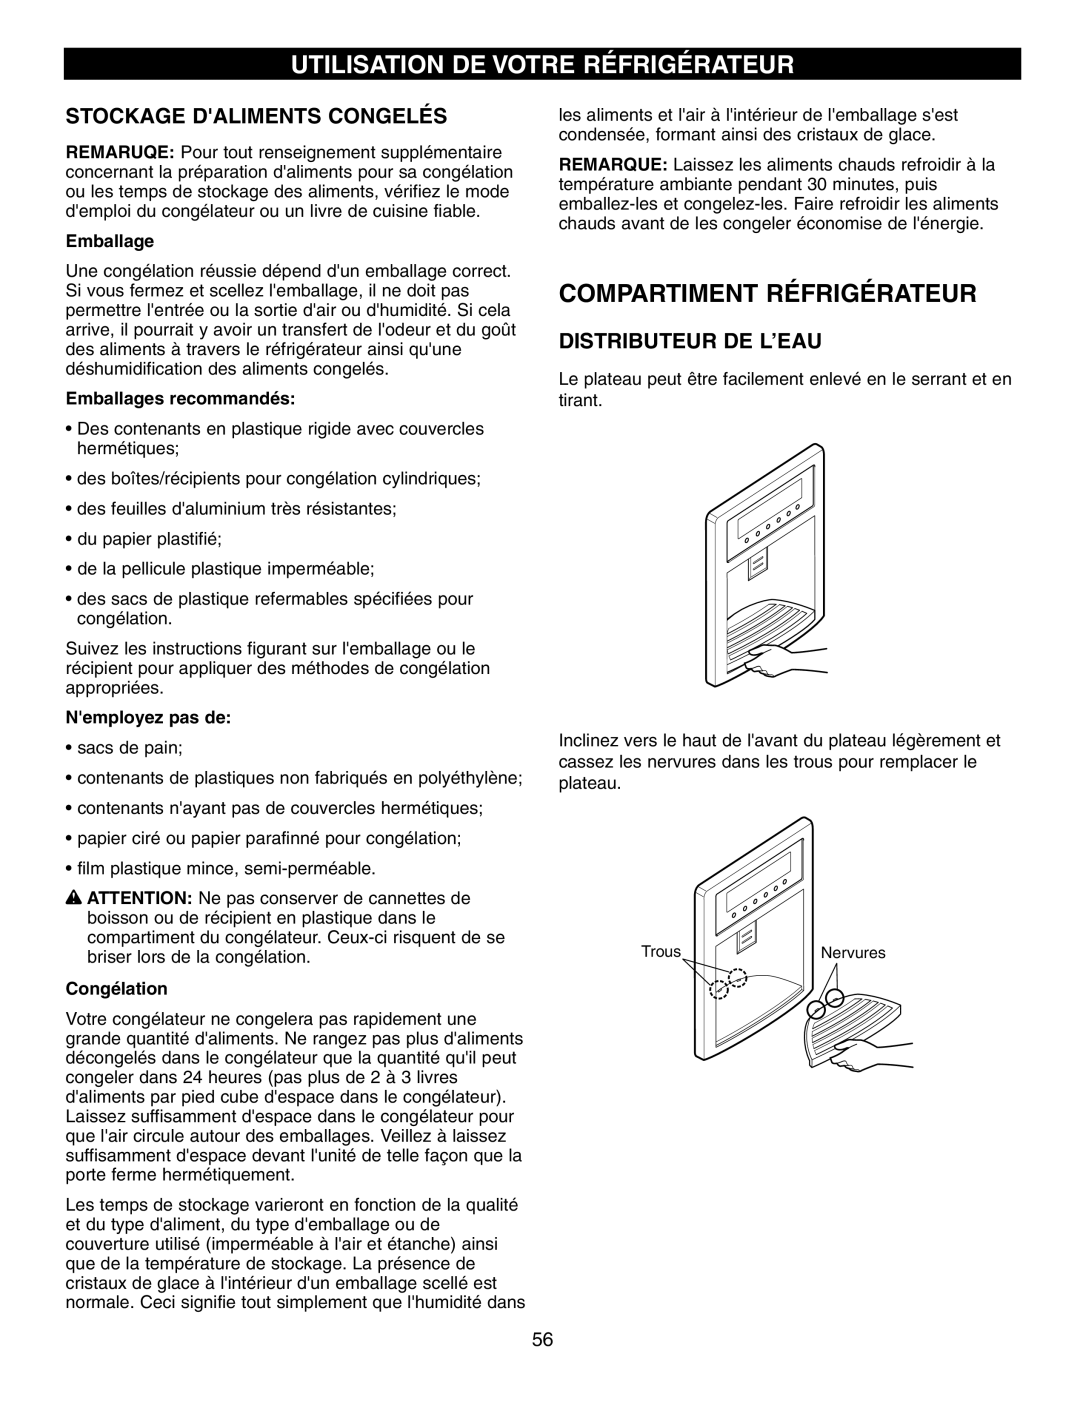 LG Electronics LFX21970 manual Compartiment Réfrigérateur, Utilisation De Votre Réfrigérateur, Stockage Daliments Congelés 